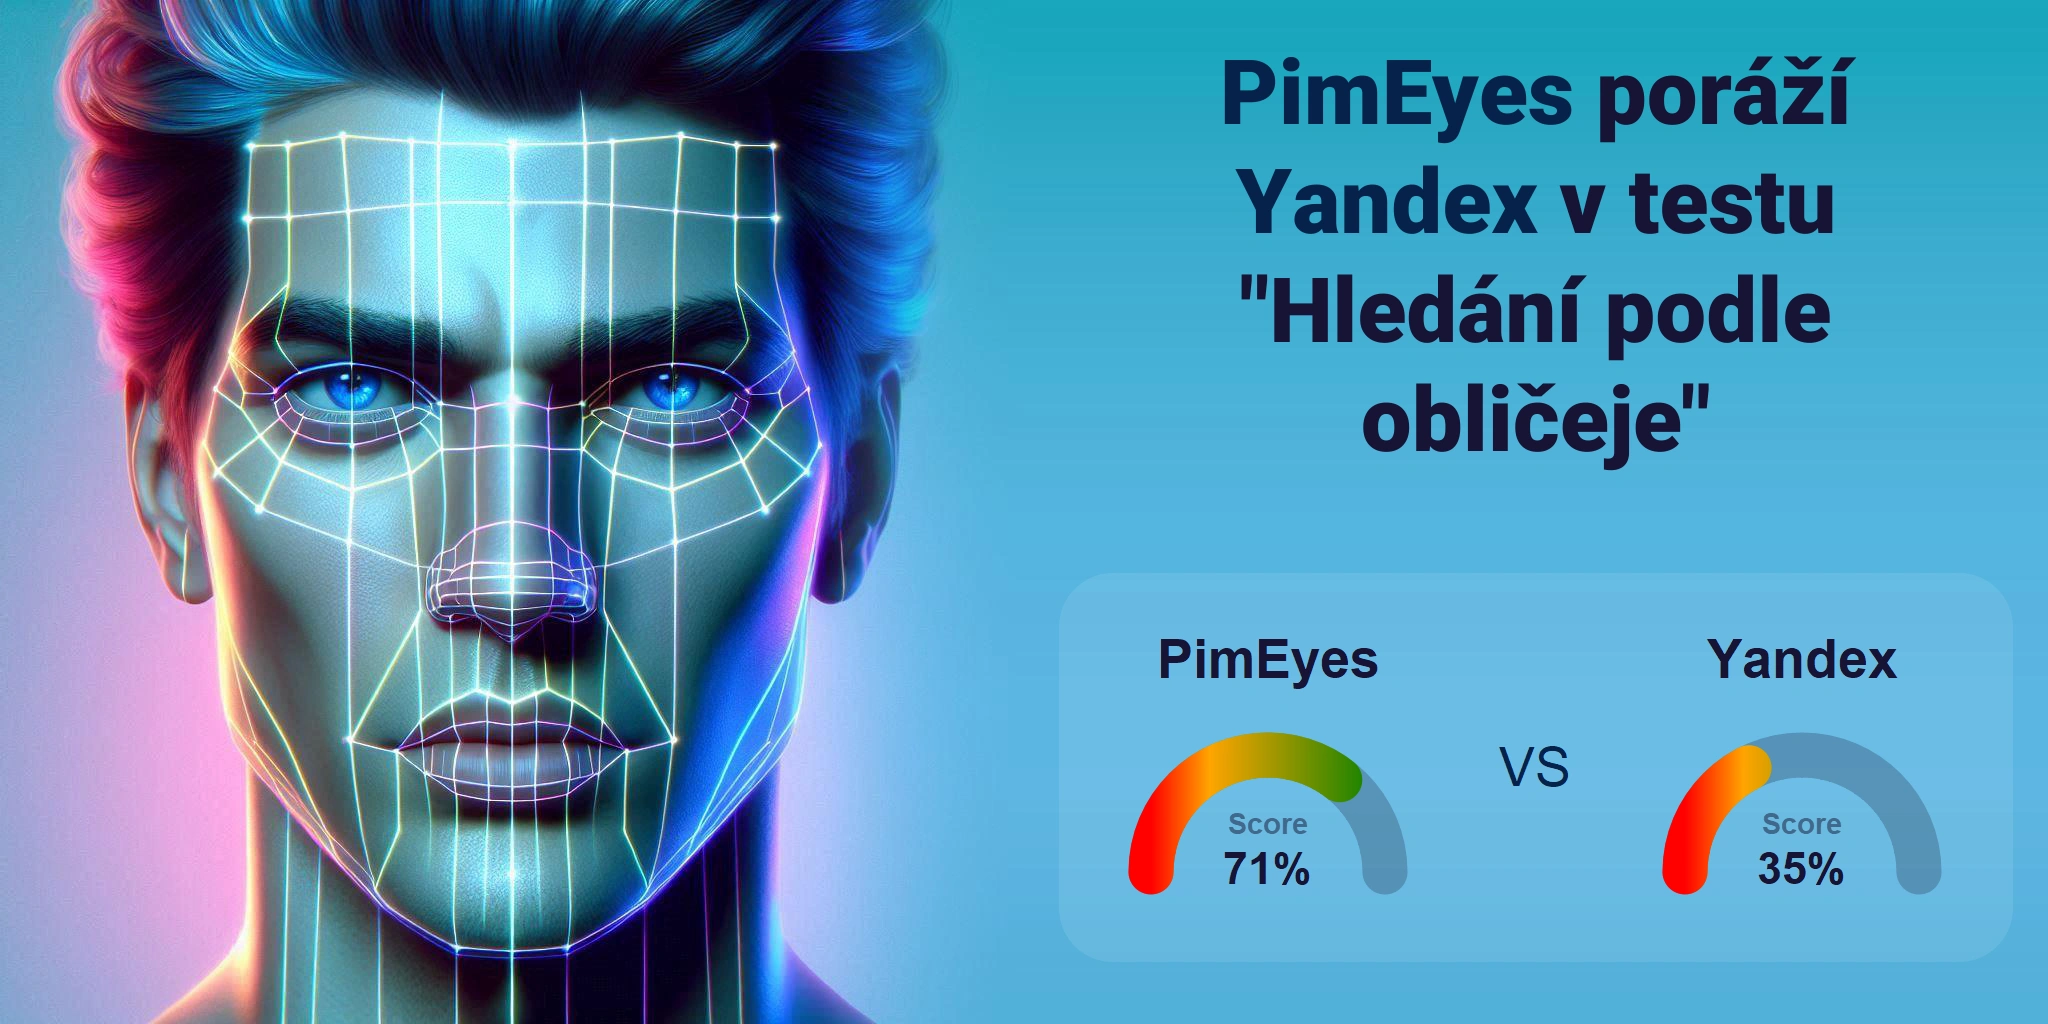 Který je lepší pro vyhledávání obličejů: <br>PimEyes nebo Yandex?